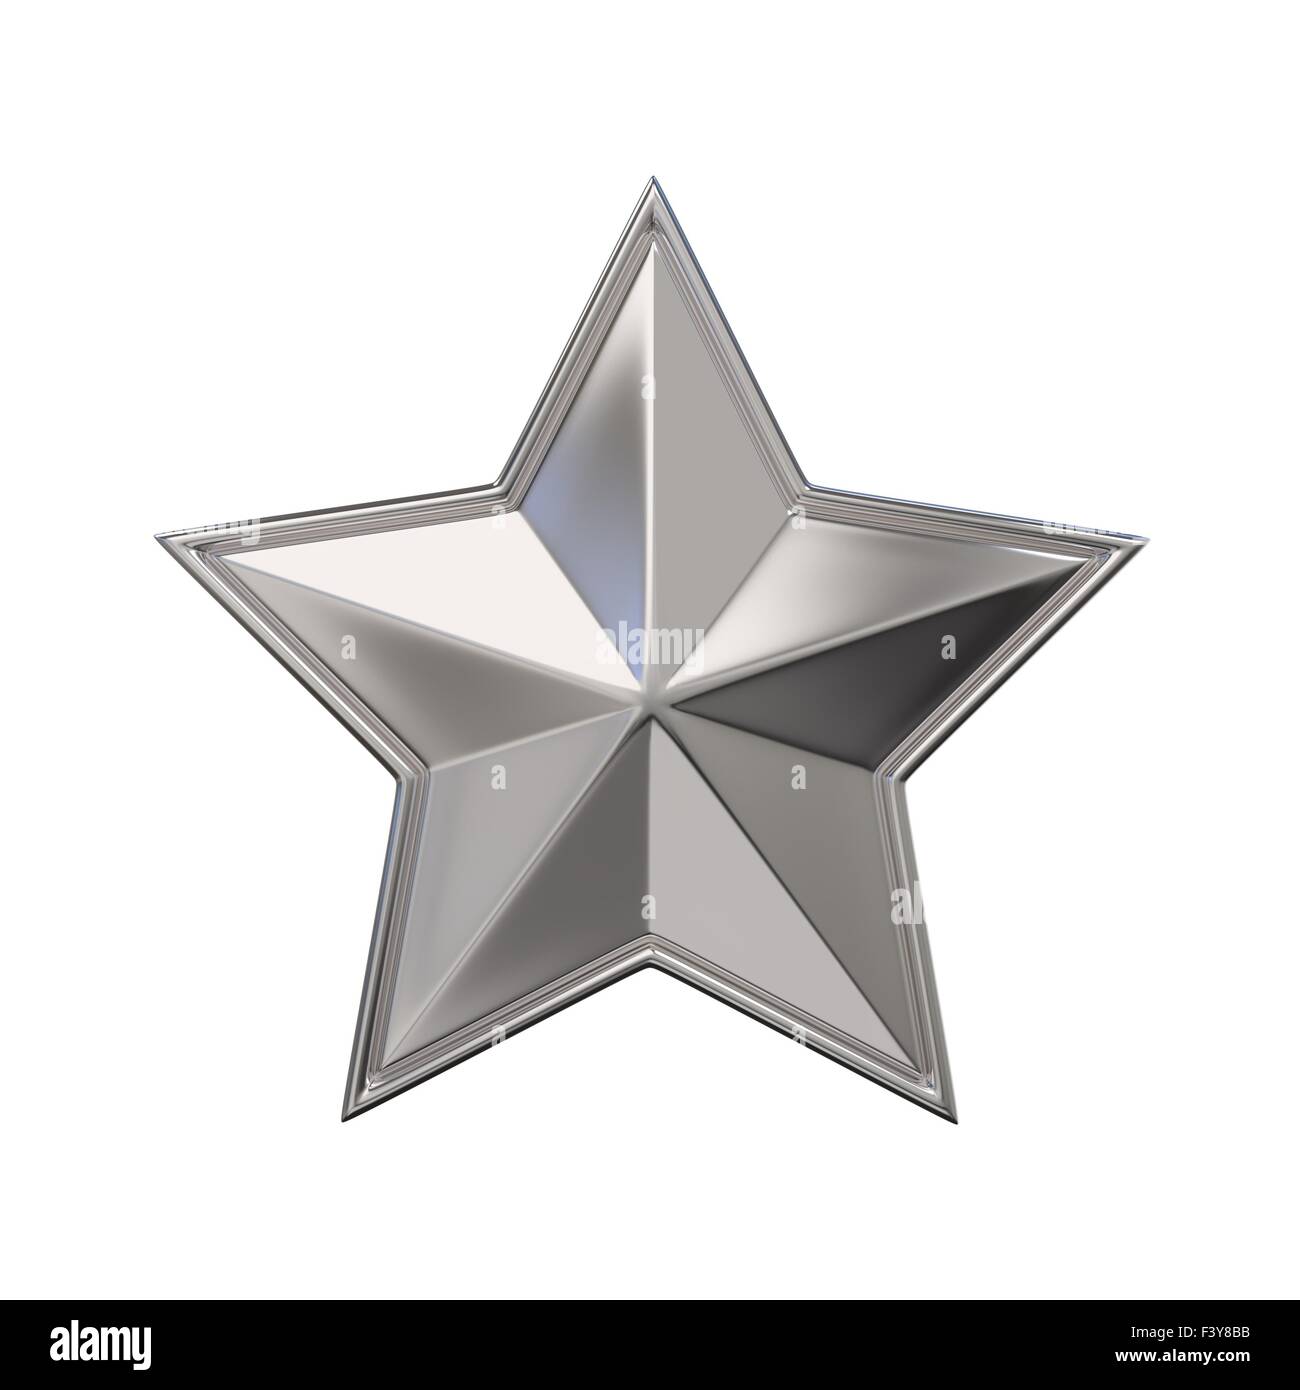 Silver Star: Ngôi sao bạc với vẻ đẹp lấp lánh, trang trọng sẽ mang đến cho bạn sự mê hoặc và độc đáo. Hình ảnh liên quan đến ngôi sao bạc chắc chắn sẽ khiến bạn bị thu hút bởi vẻ đẹp tuyệt vời của nó. Hãy thưởng thức các hình ảnh này và cảm nhận nét đẹp đặc biệt của những ngôi sao bạc lấp lánh.